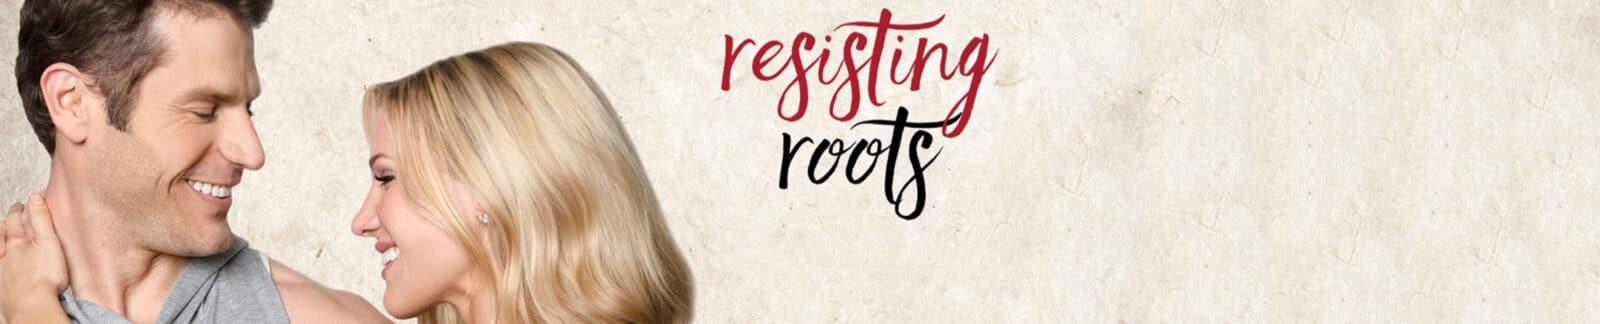 Resisting Roots movie header